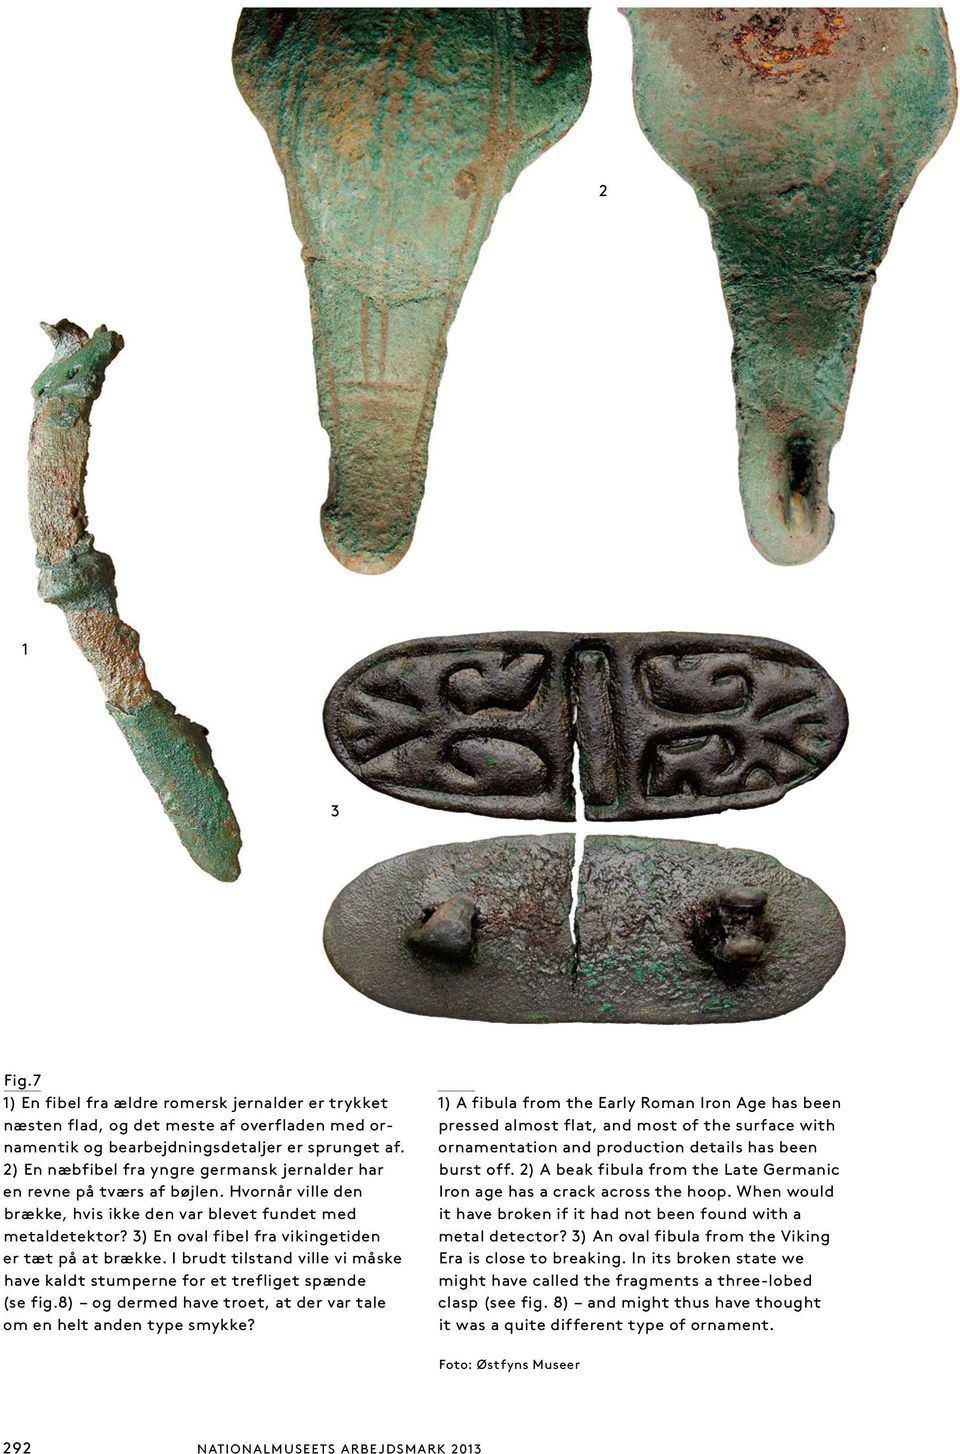 3) En oval fibel fra vikingetiden er tæt på at brække. I brudt tilstand ville vi måske have kaldt stumperne for et trefliget spænde (se fig.